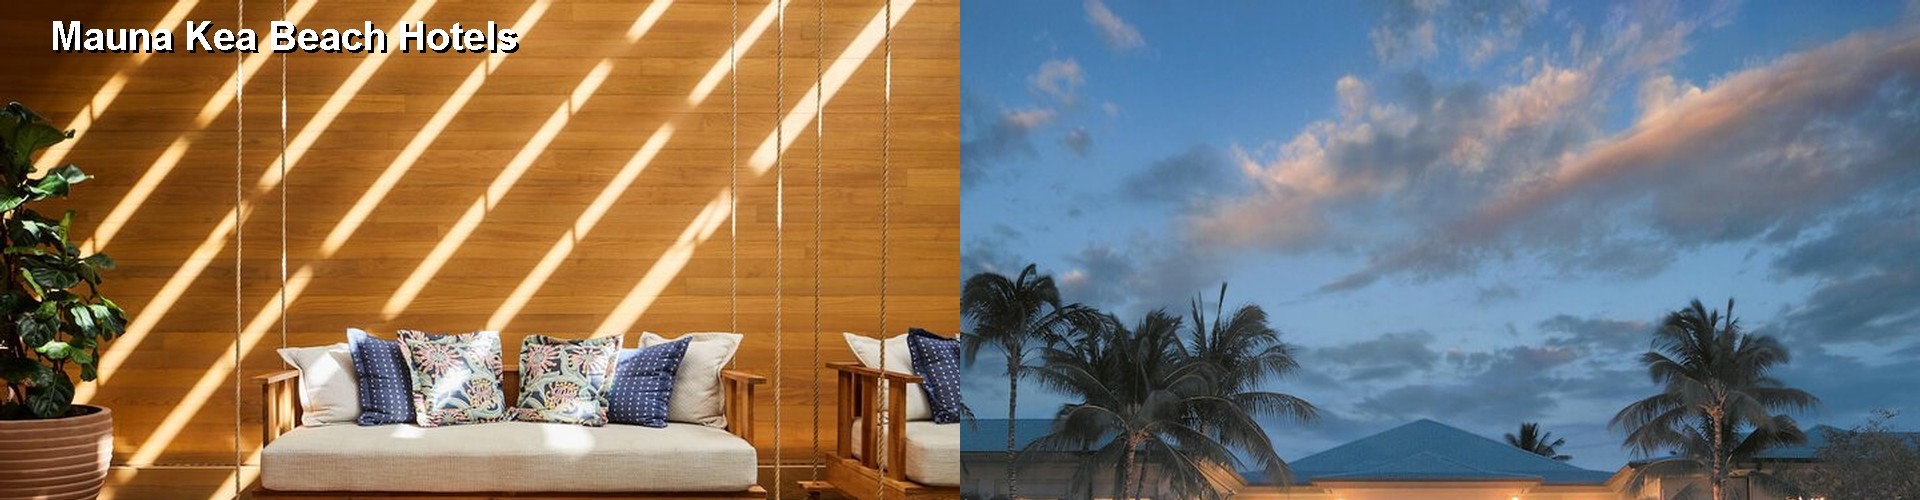 5 Best Hotels near Mauna Kea Beach